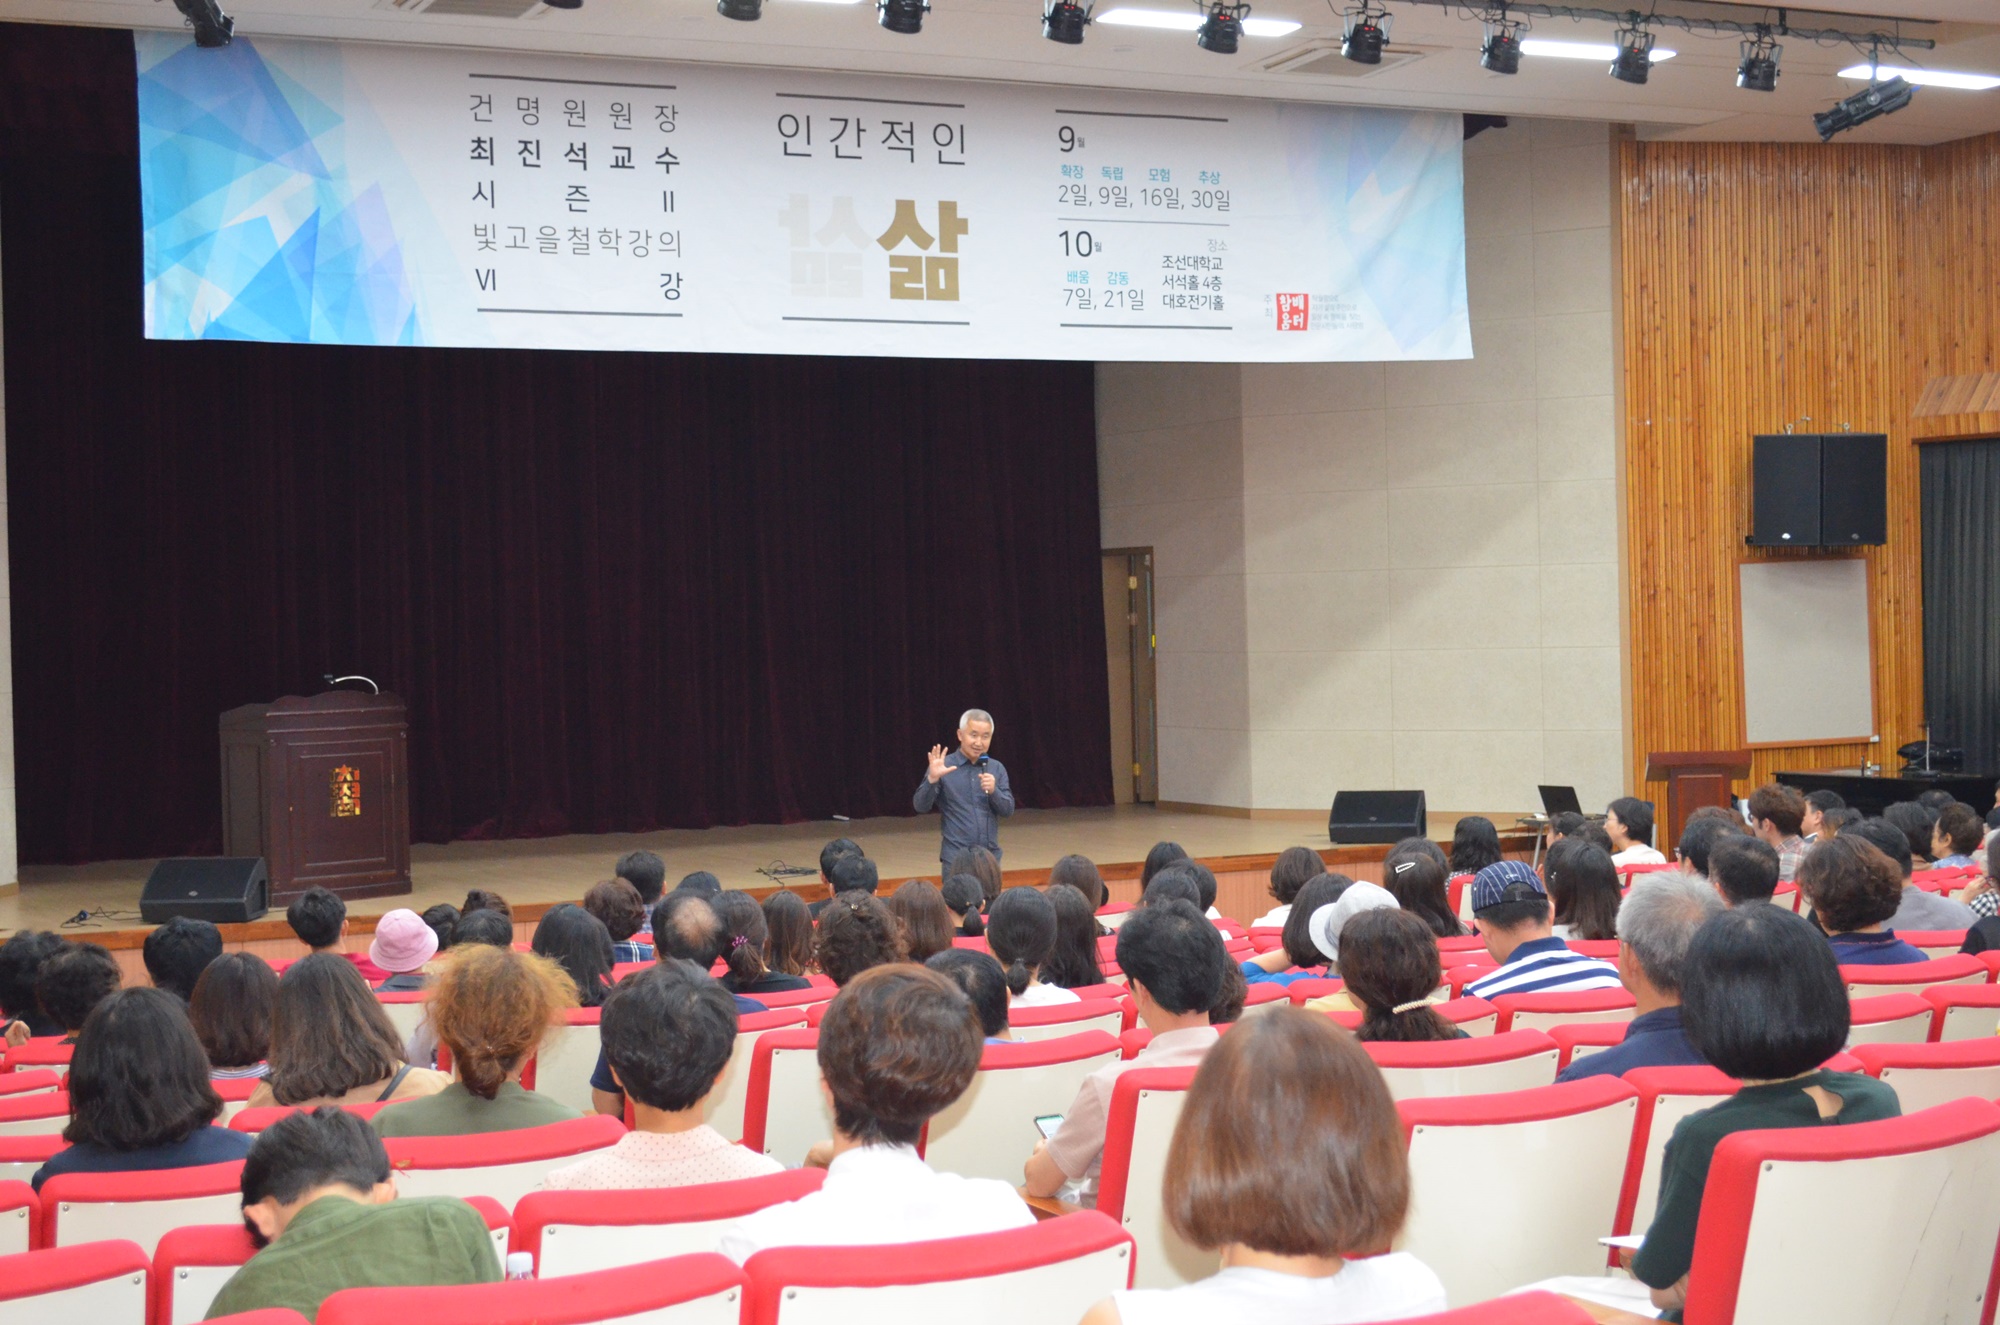 최진석 교수가 16일 조선대학교 서석홀에서 '모험'이라는 주제로 강의를 진행했다. 이날 강연에는 150여 명이 자리를 채웠다. <사진= 김인한 수습기자>